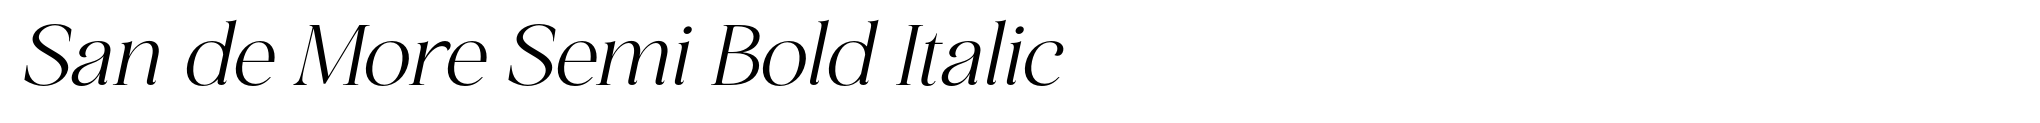 San de More Semi Bold Italic image